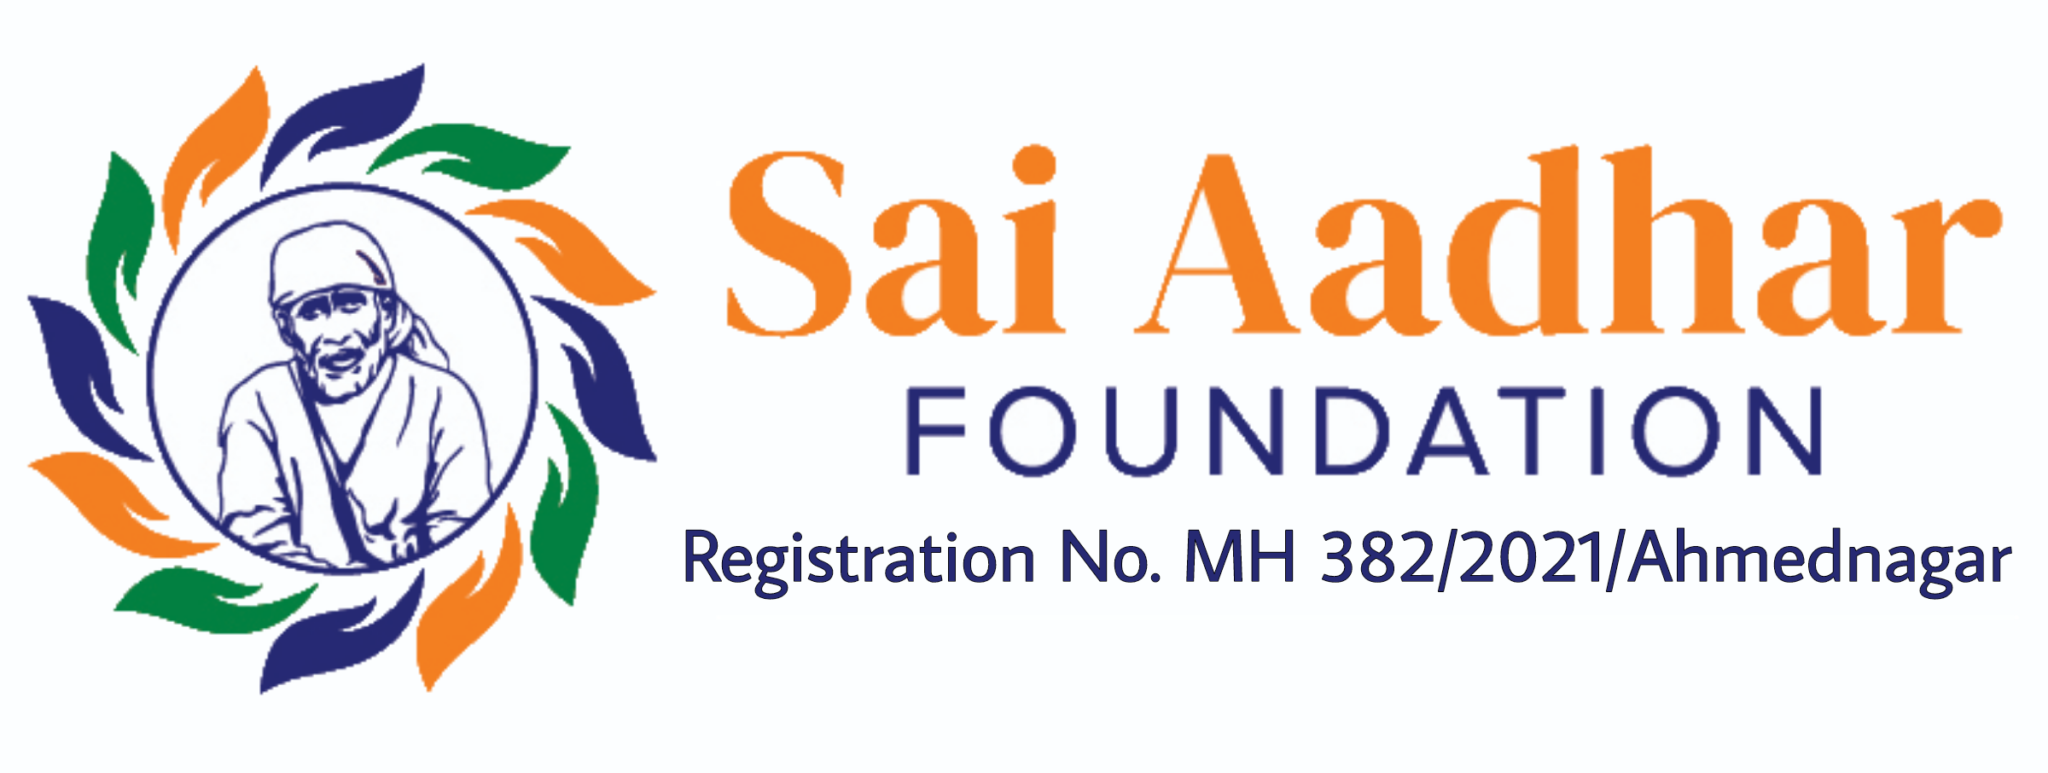 Sai Baba Donation In Shirdi Sai Aadhar Foundation